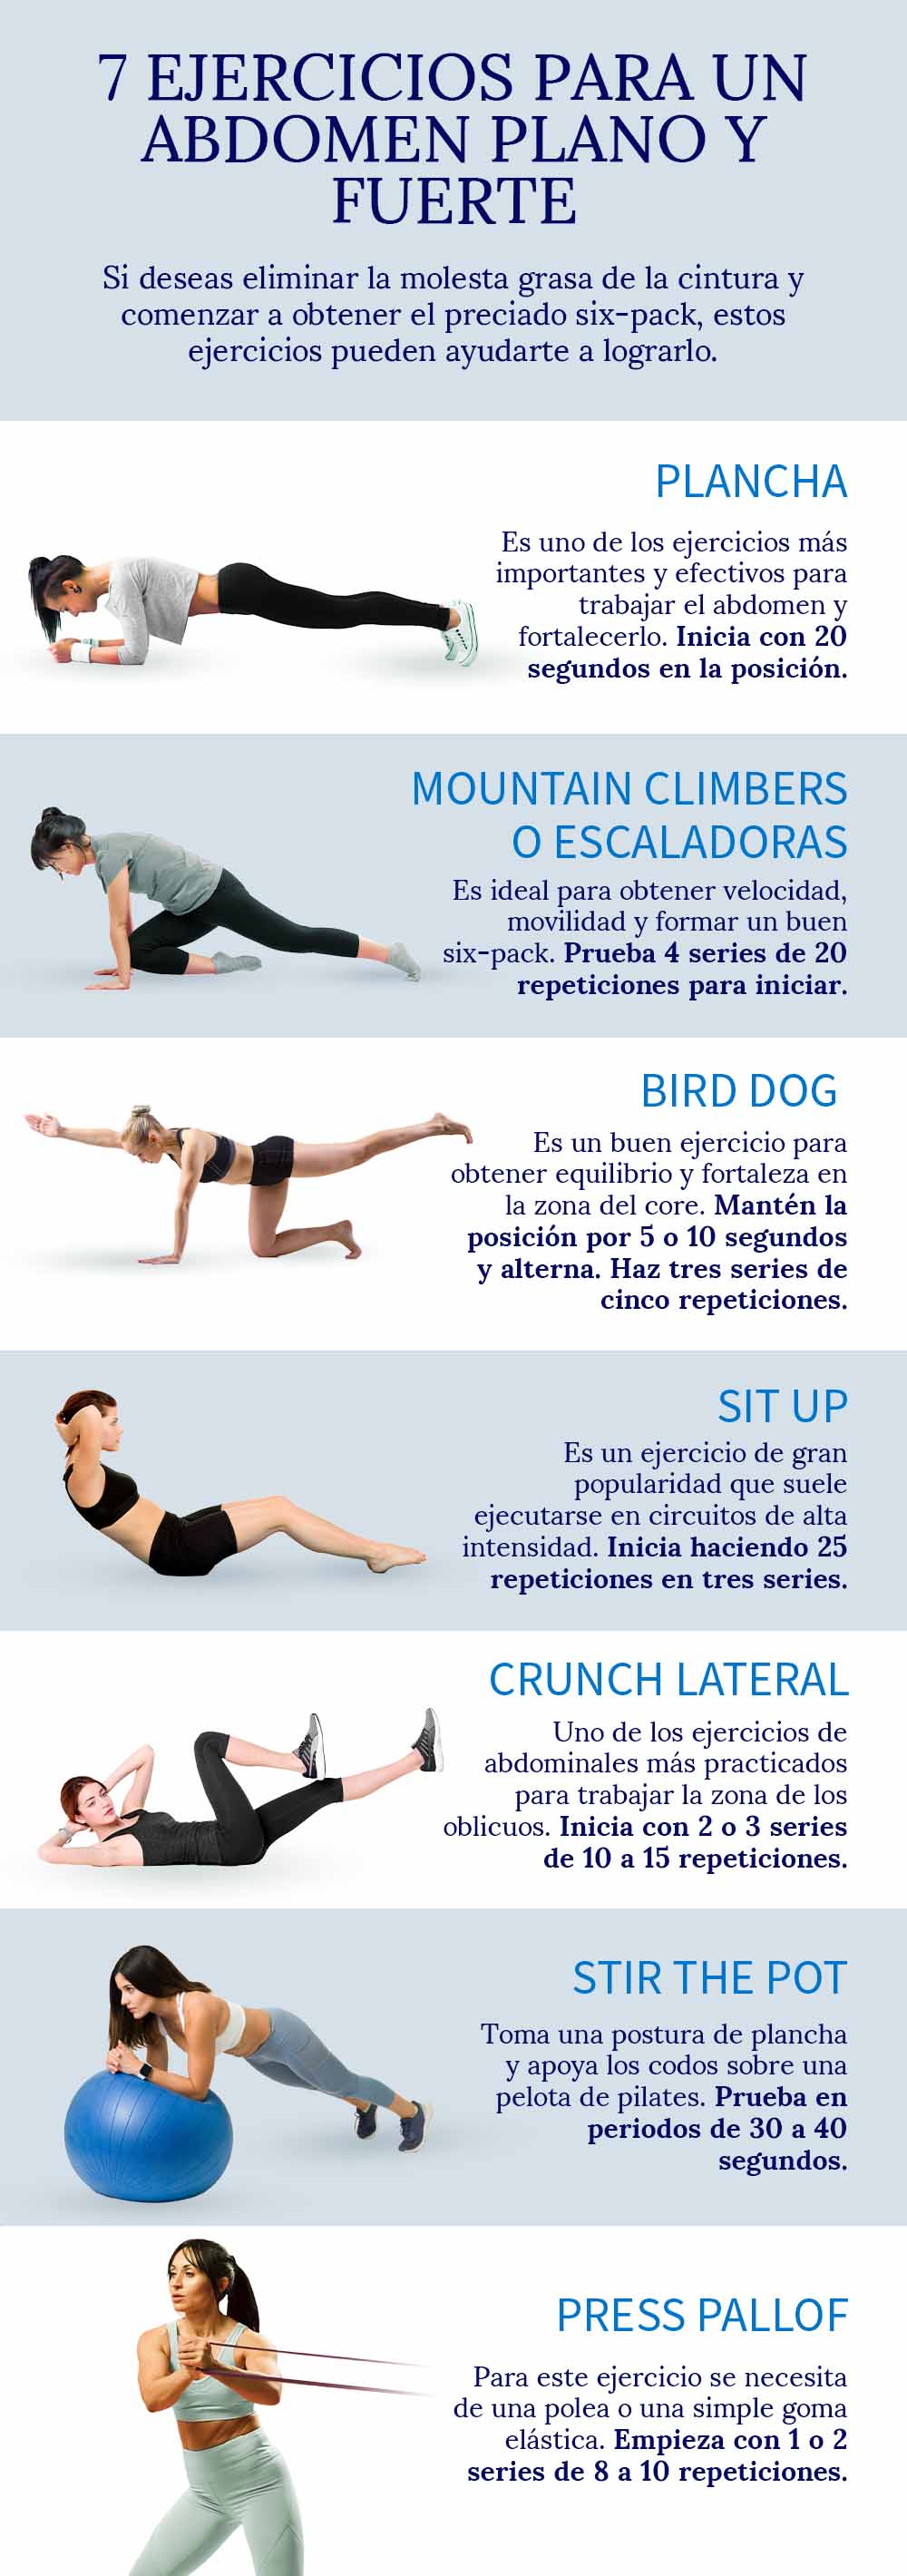 7-ejercicios-para-un-abdomen-plano-y-fuerte